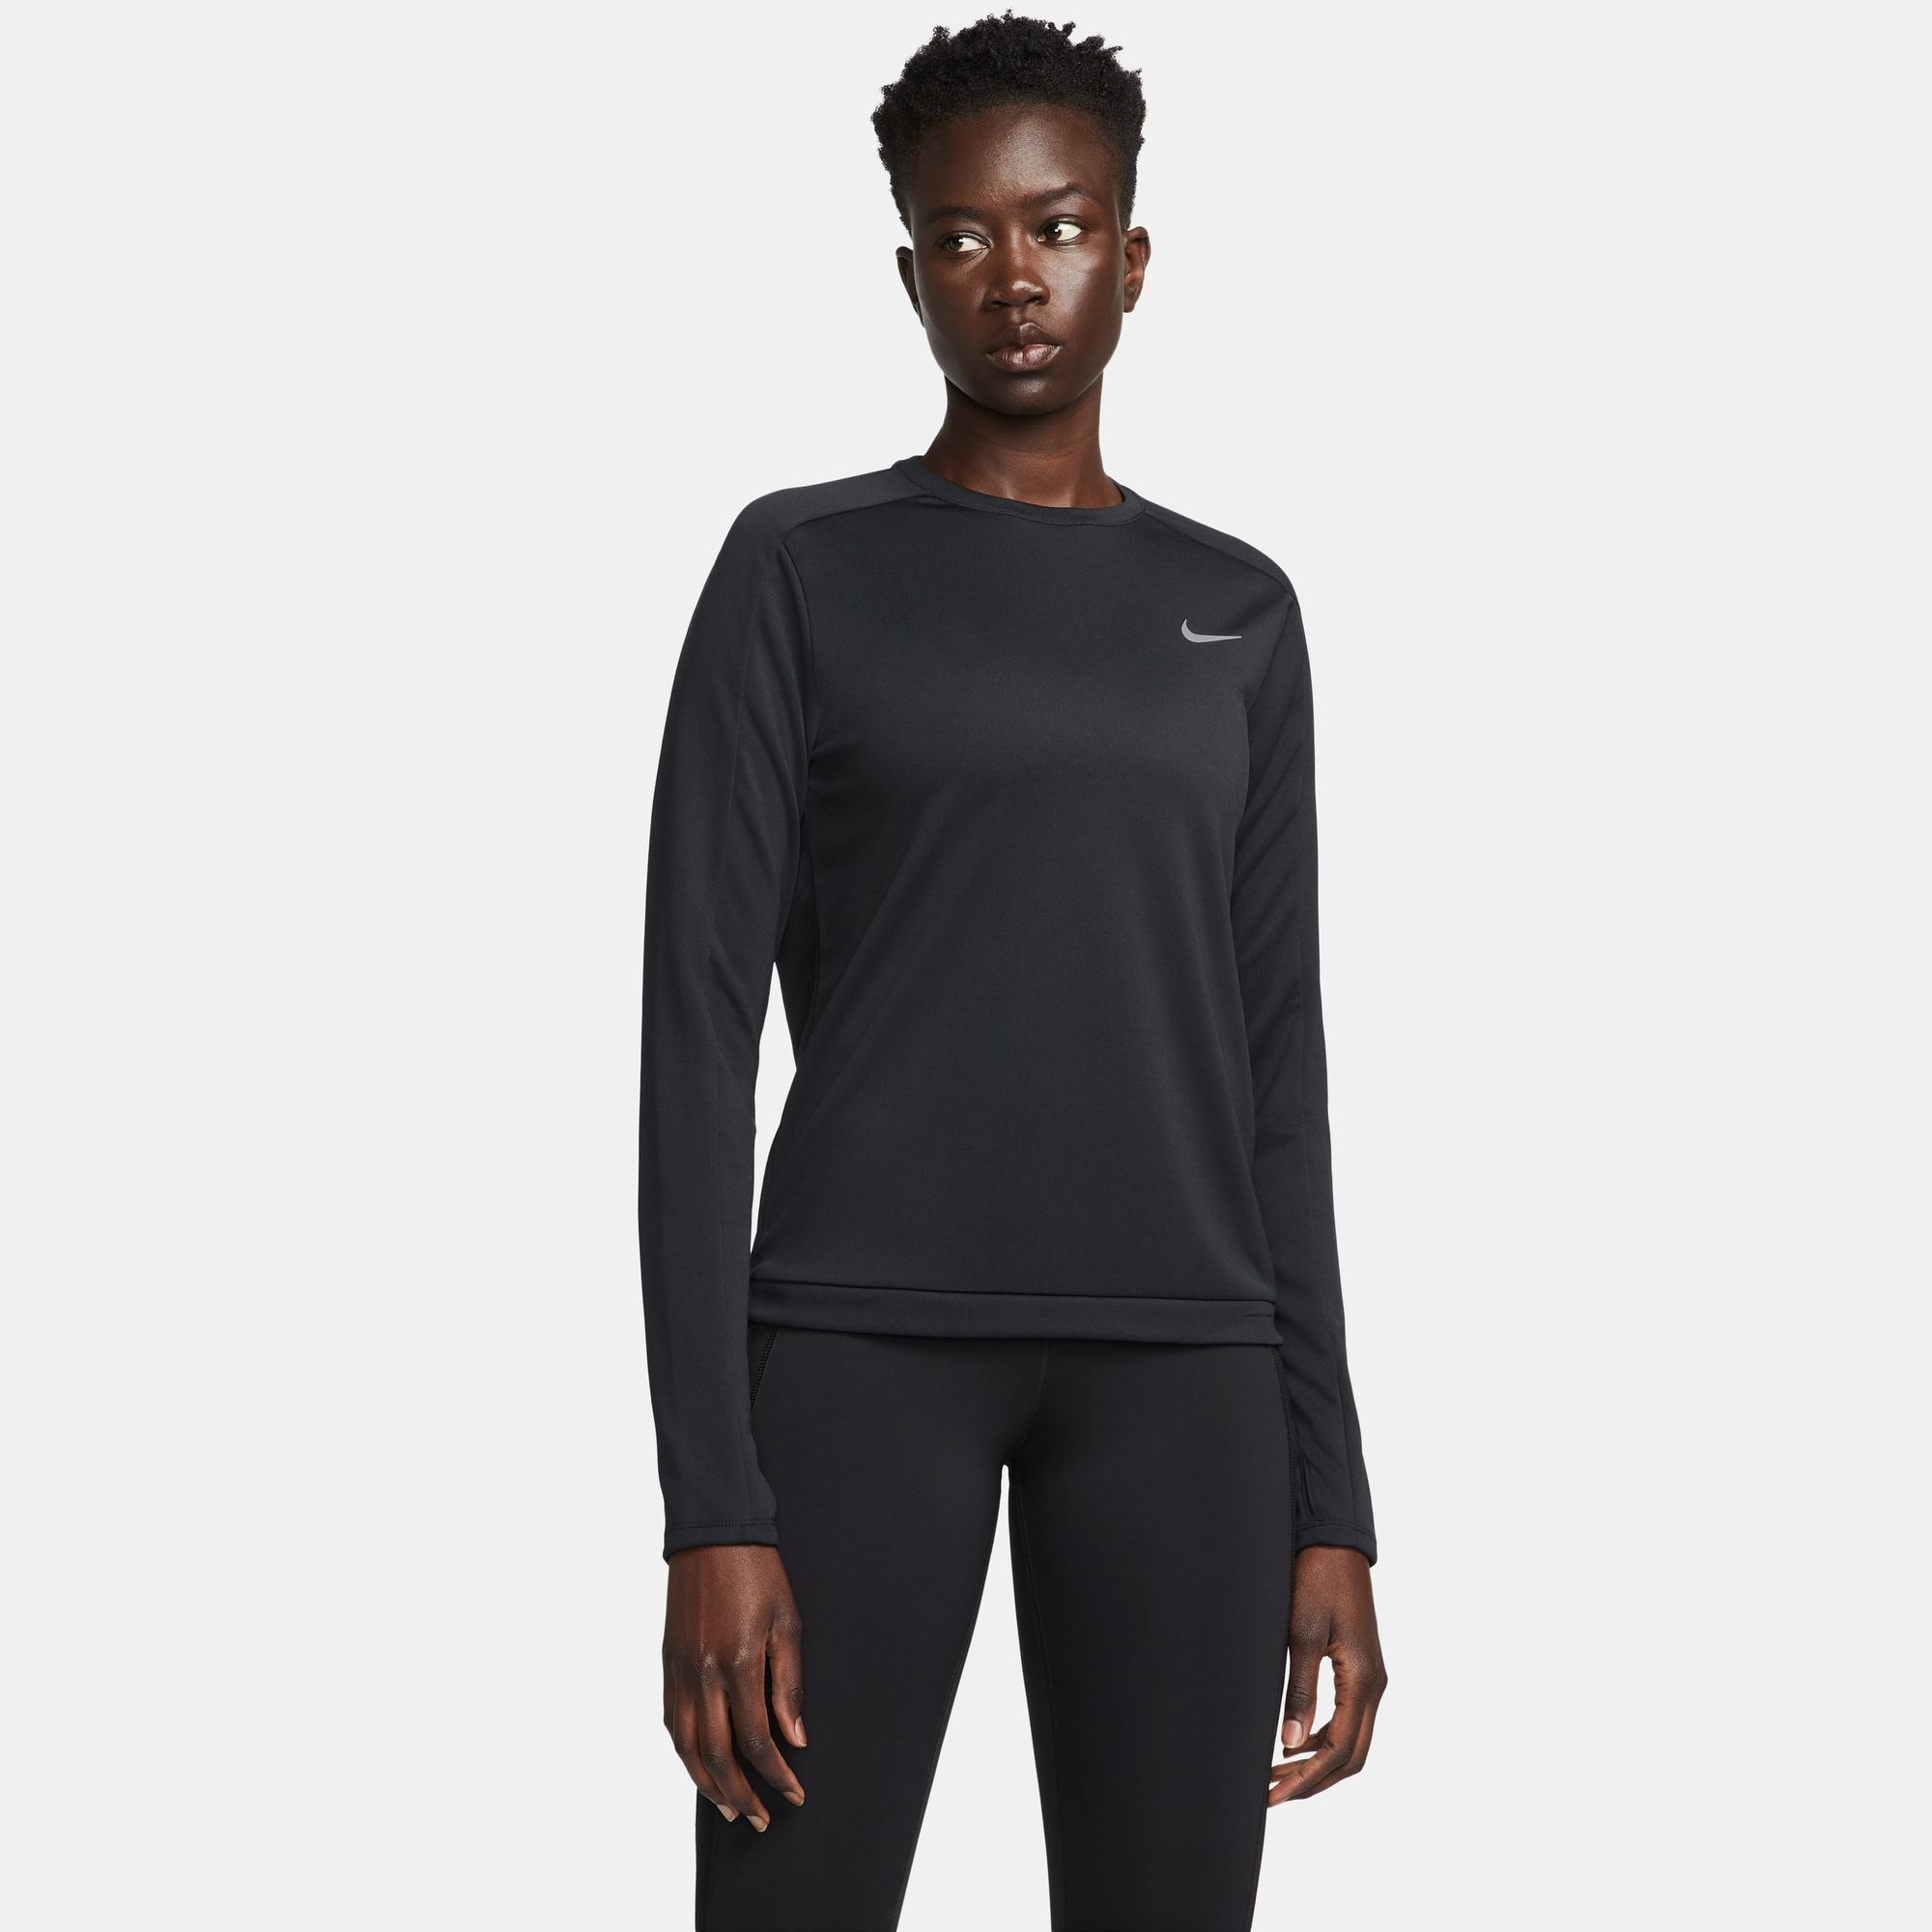 Nike Laufshirt "DRI-FIT WOMENS CREW-NECK RUNNING TOP"